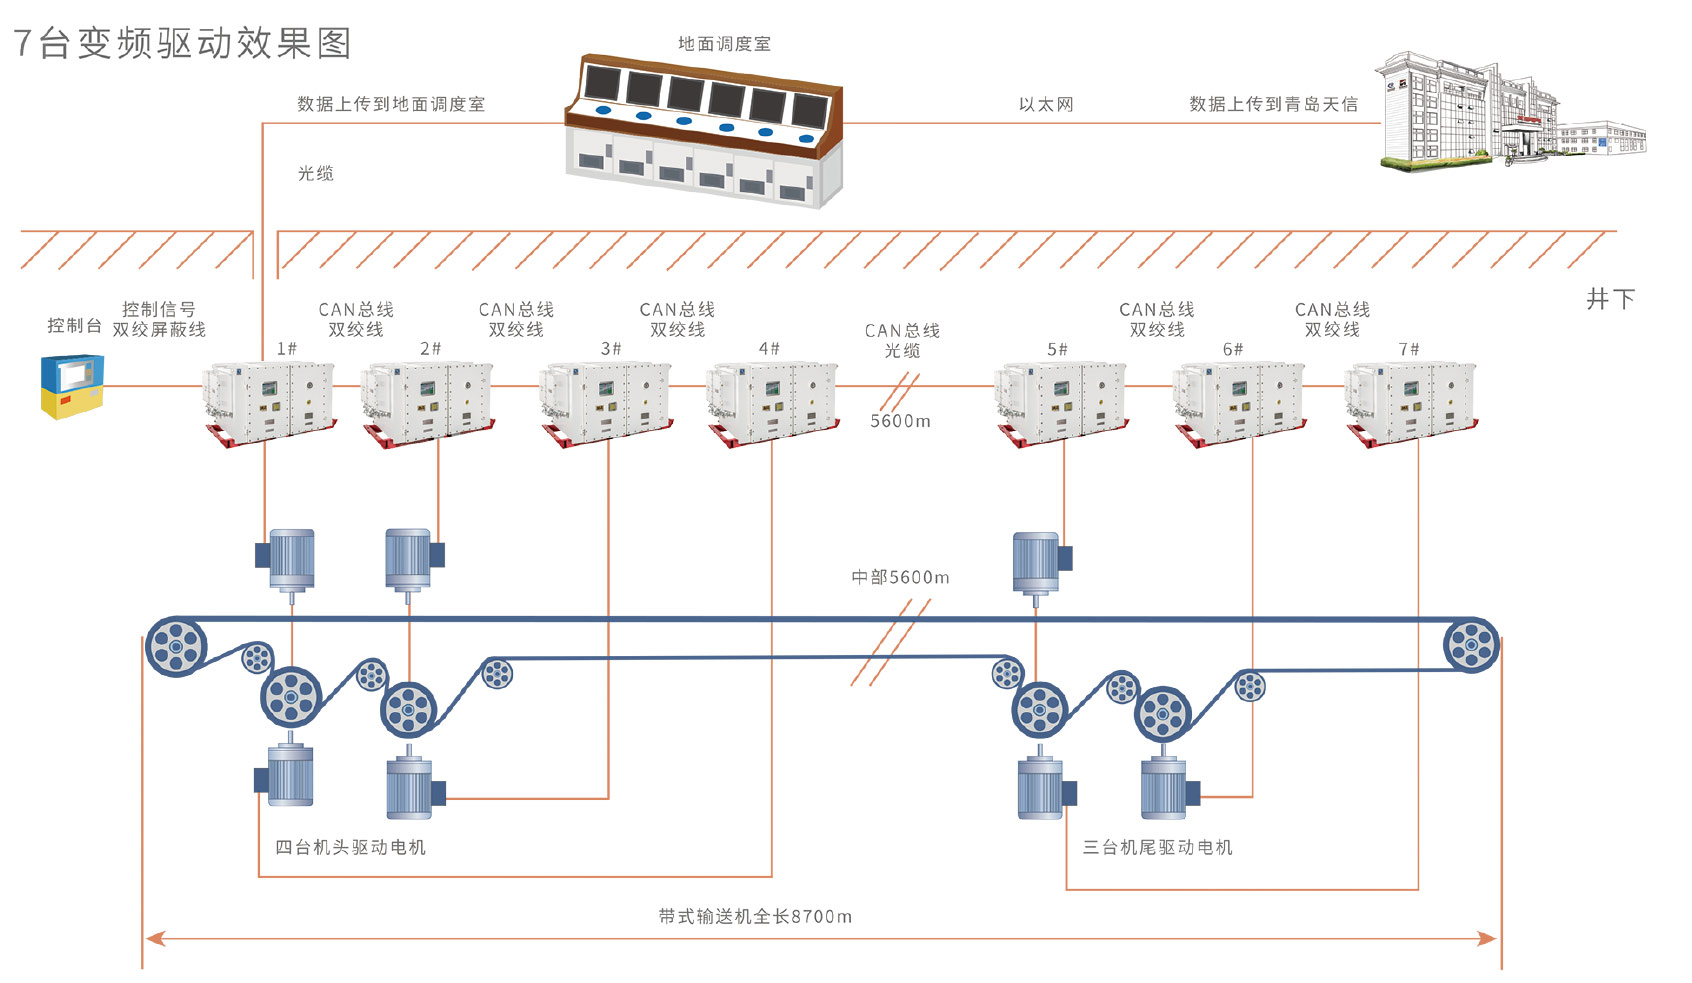 胶带机应用:案例四长距离多点主运带式输送机变频驱动解决方案